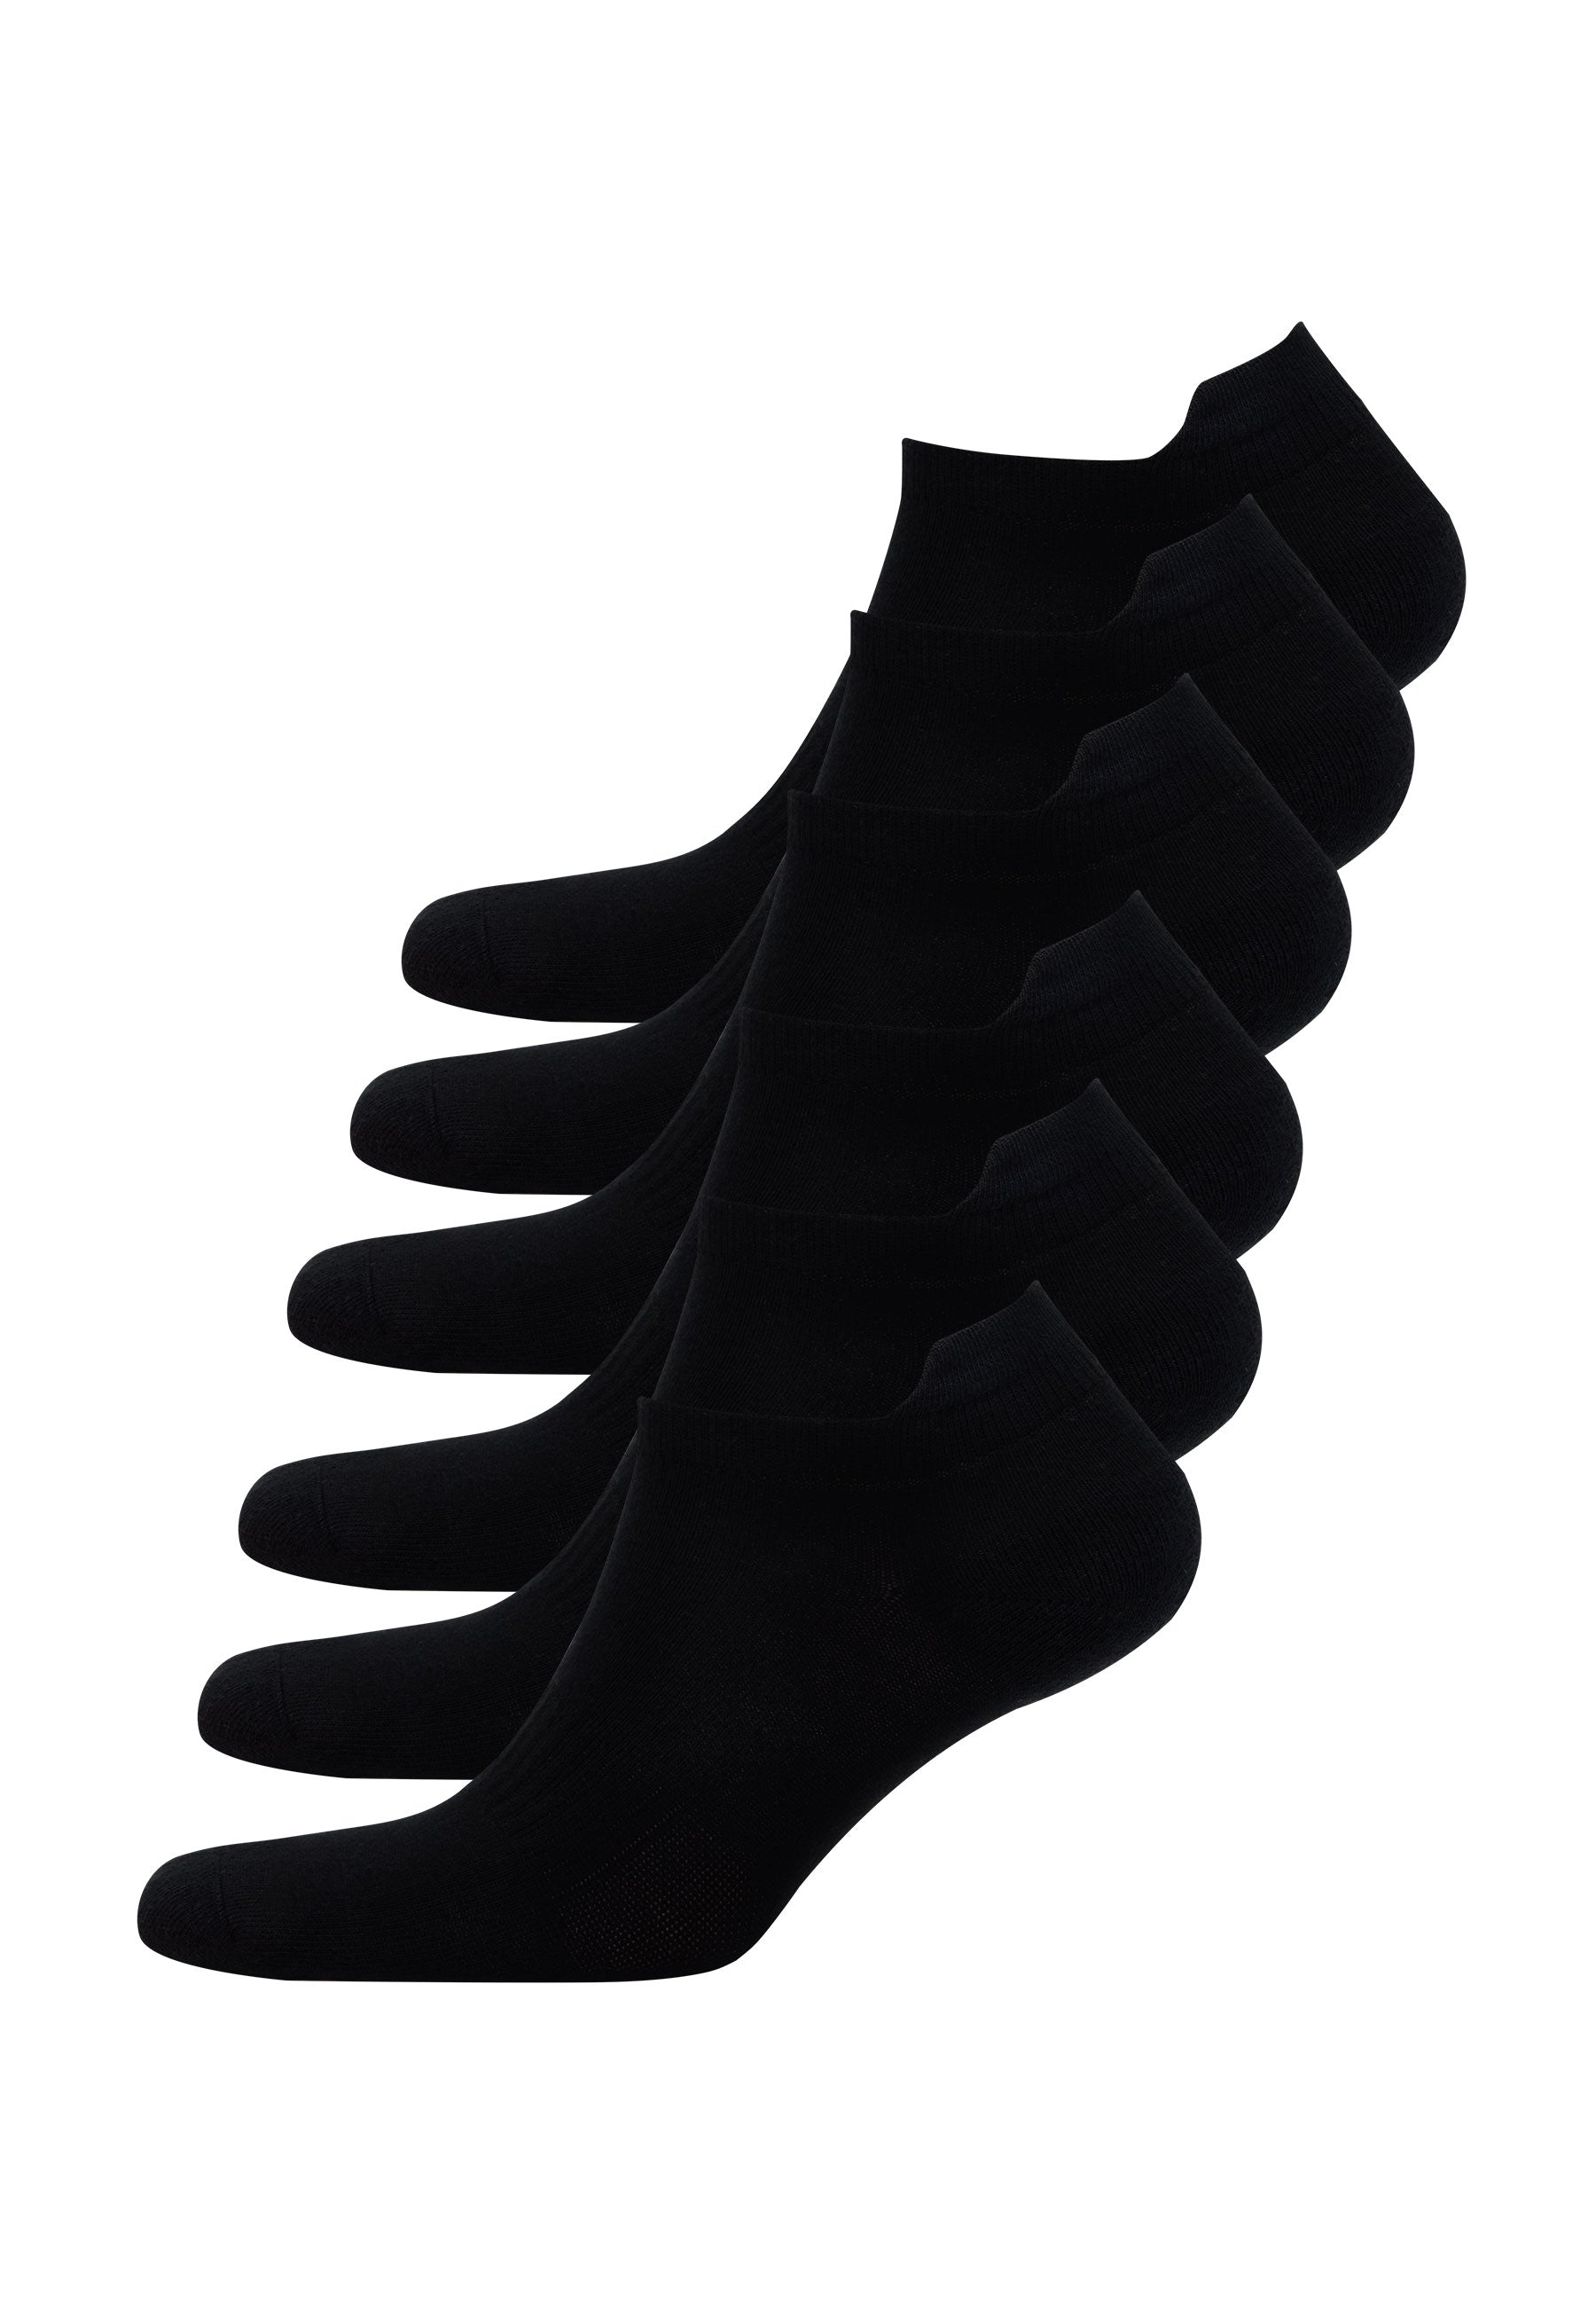 6’lı Siyah Pamuk Karışımlı Erkek Çorap Seti RUNNING - Socks - Westmark London EU(TR) Store Organik Pamuklu Sürdürülebilir Moda